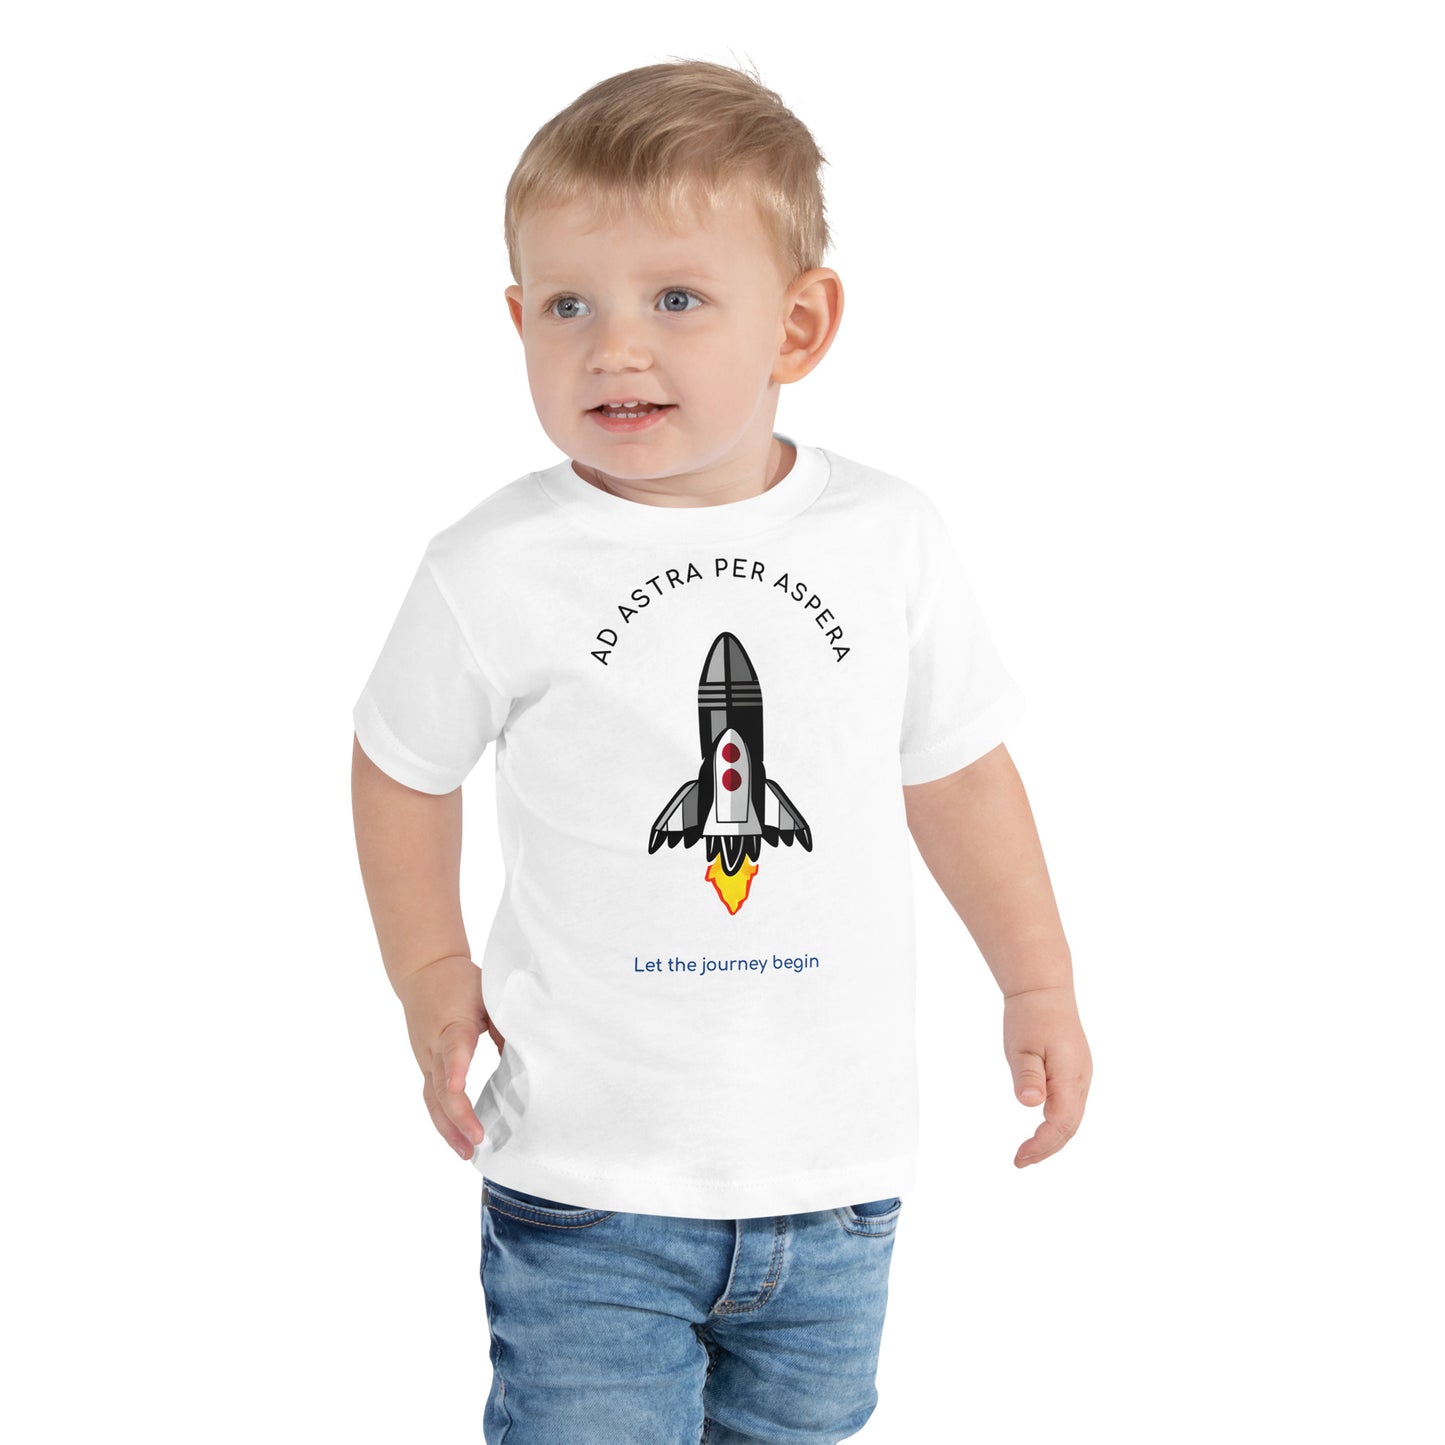 3 year old boy wearing white rocket t-shirt